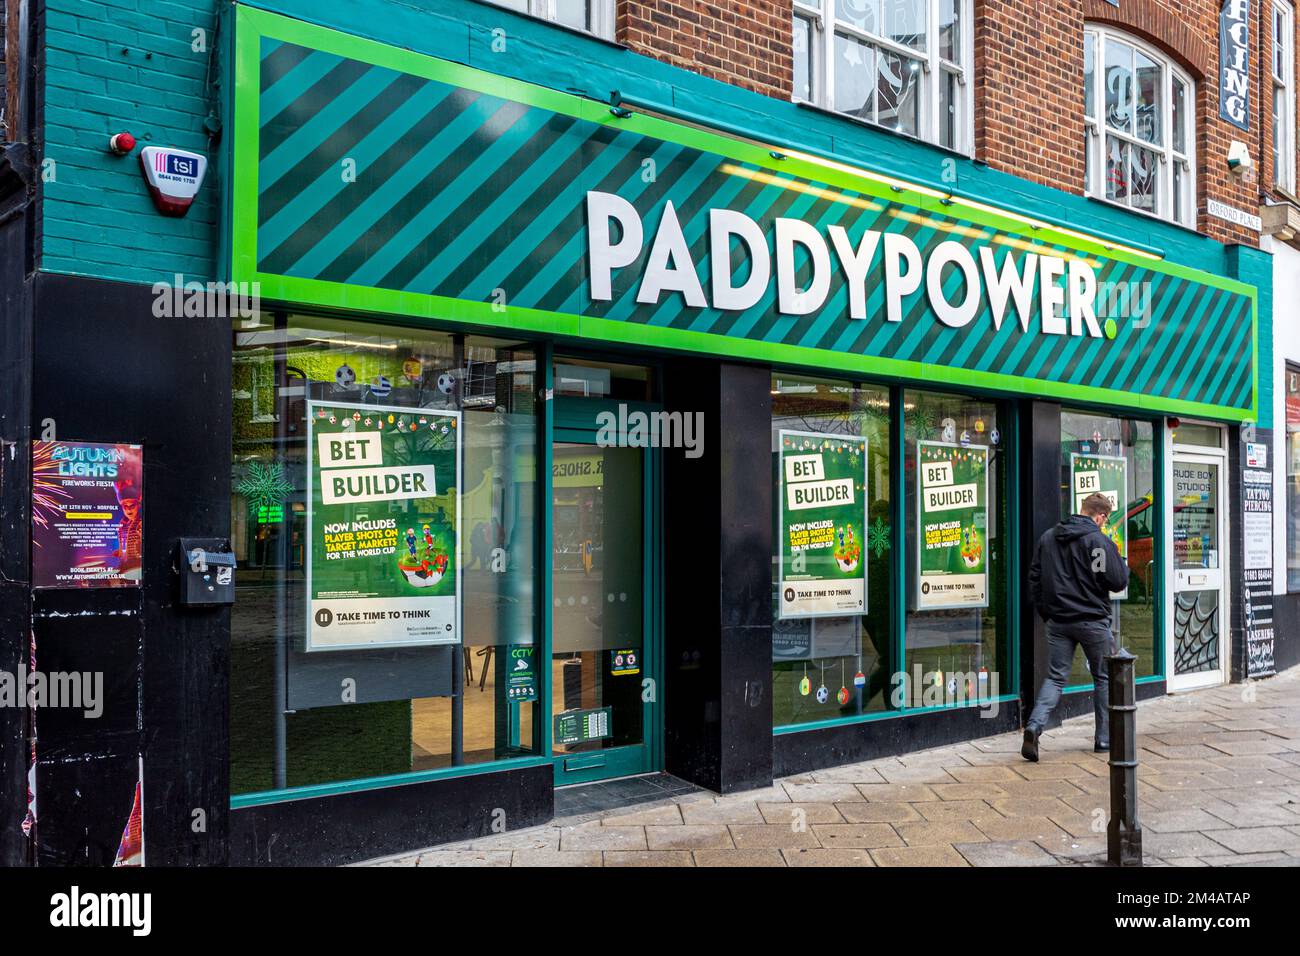 Negozio di scommesse su licenza Paddypower - Paddy Power Bookmakers Shop a Peterborough UK. Paddy Power è stata fondata a Dublino nel 1988. Foto Stock